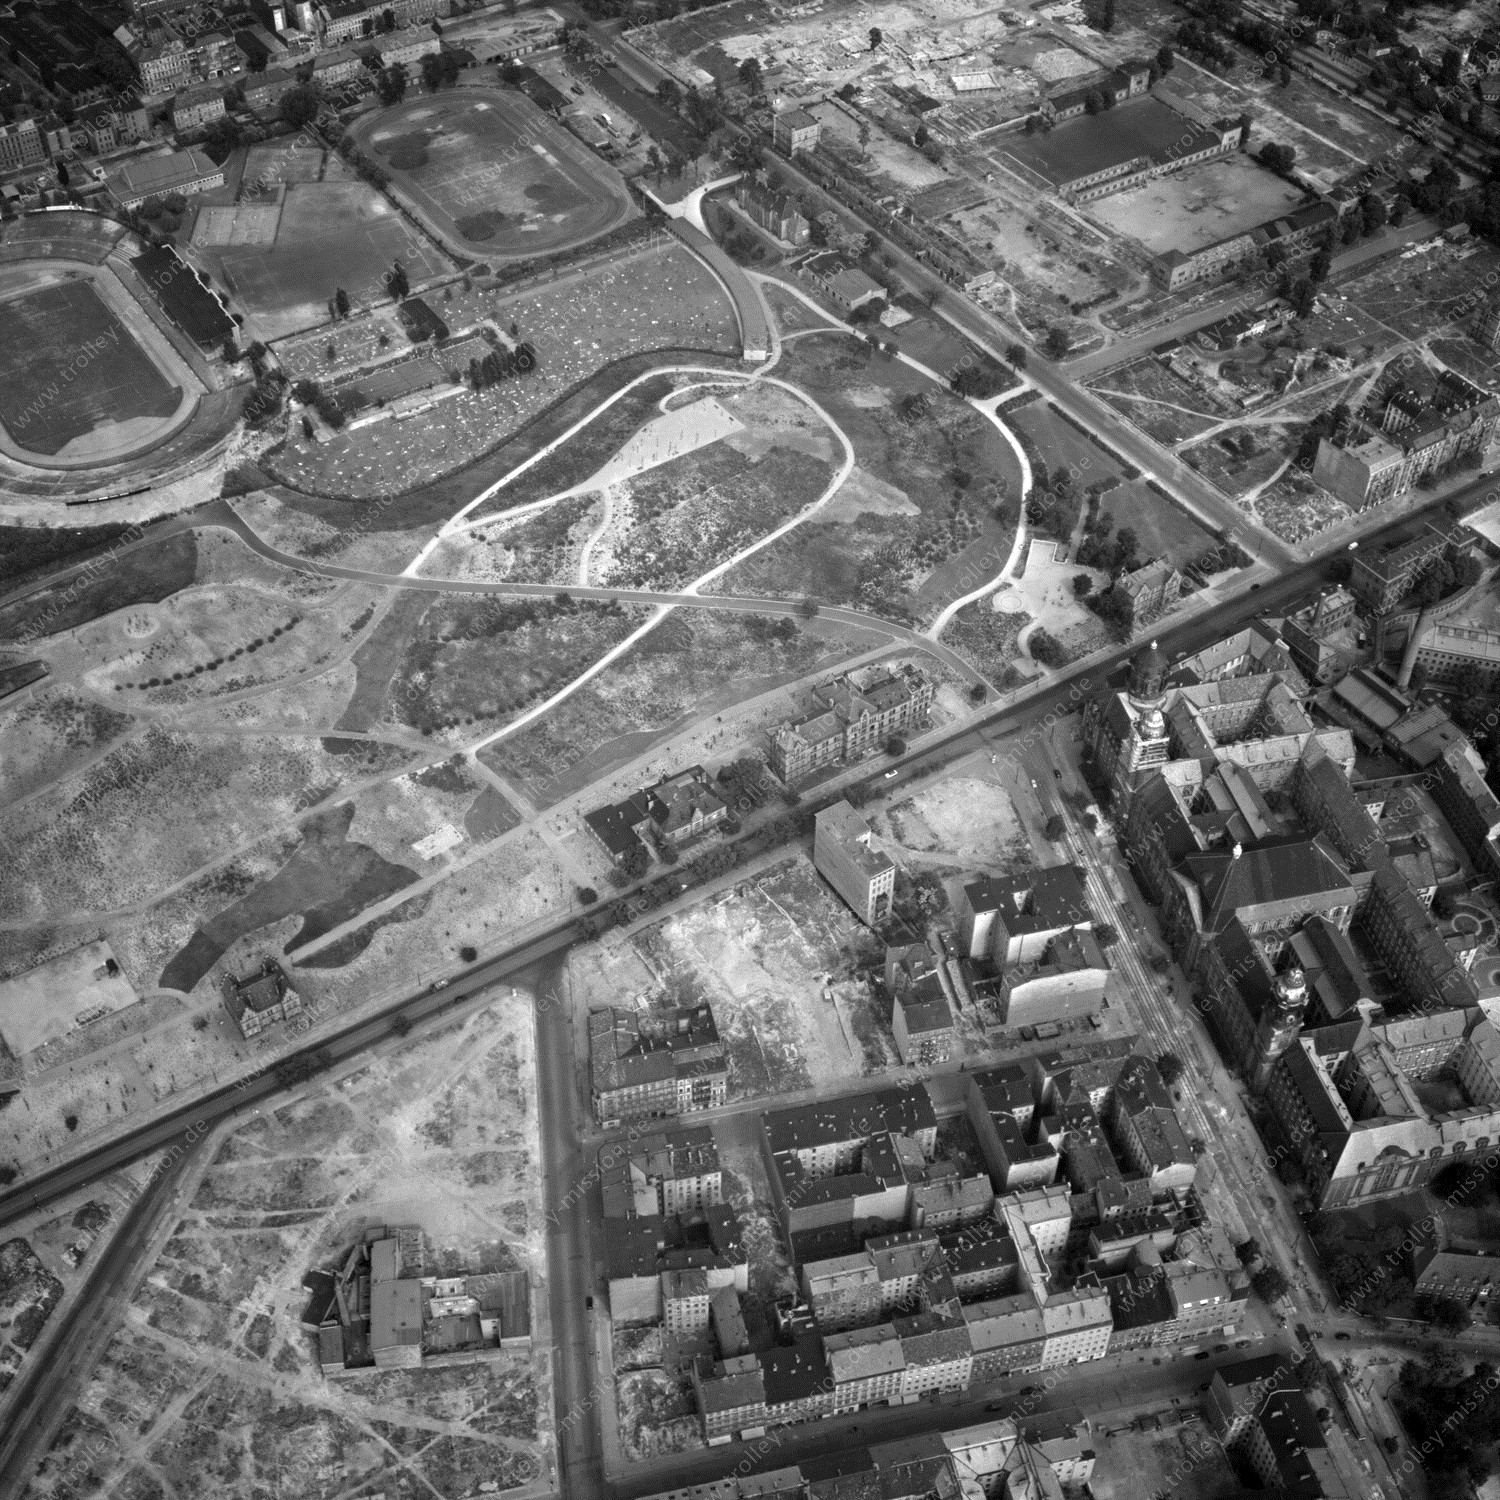 Alte Fotos und Luftbilder von Berlin - Luftbildaufnahme Nr. 11 - Historische Luftaufnahmen von West-Berlin aus dem Jahr 1954 - Flugstrecke Whiskey